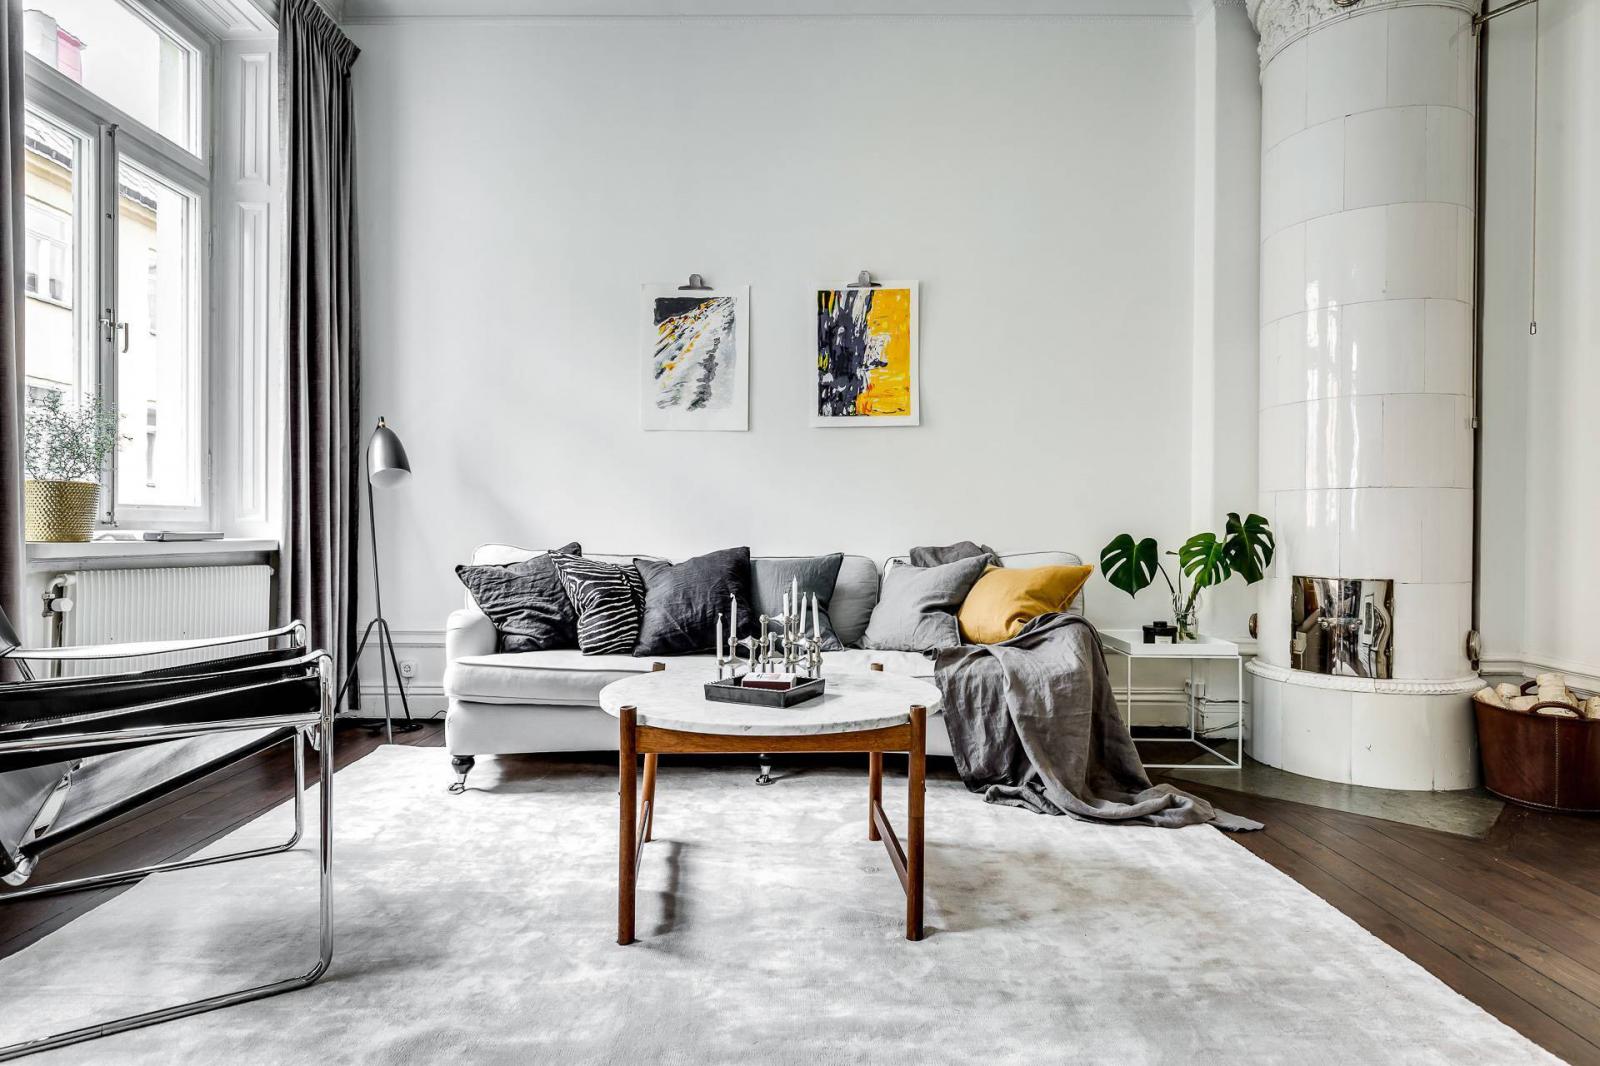 Hình ảnh toàn cảnh phòng khách với sofa trắng, tranh treo tường, cây xanh trang trí, gối tựa màu vàng chanh, cạnh đó là lò sưởi